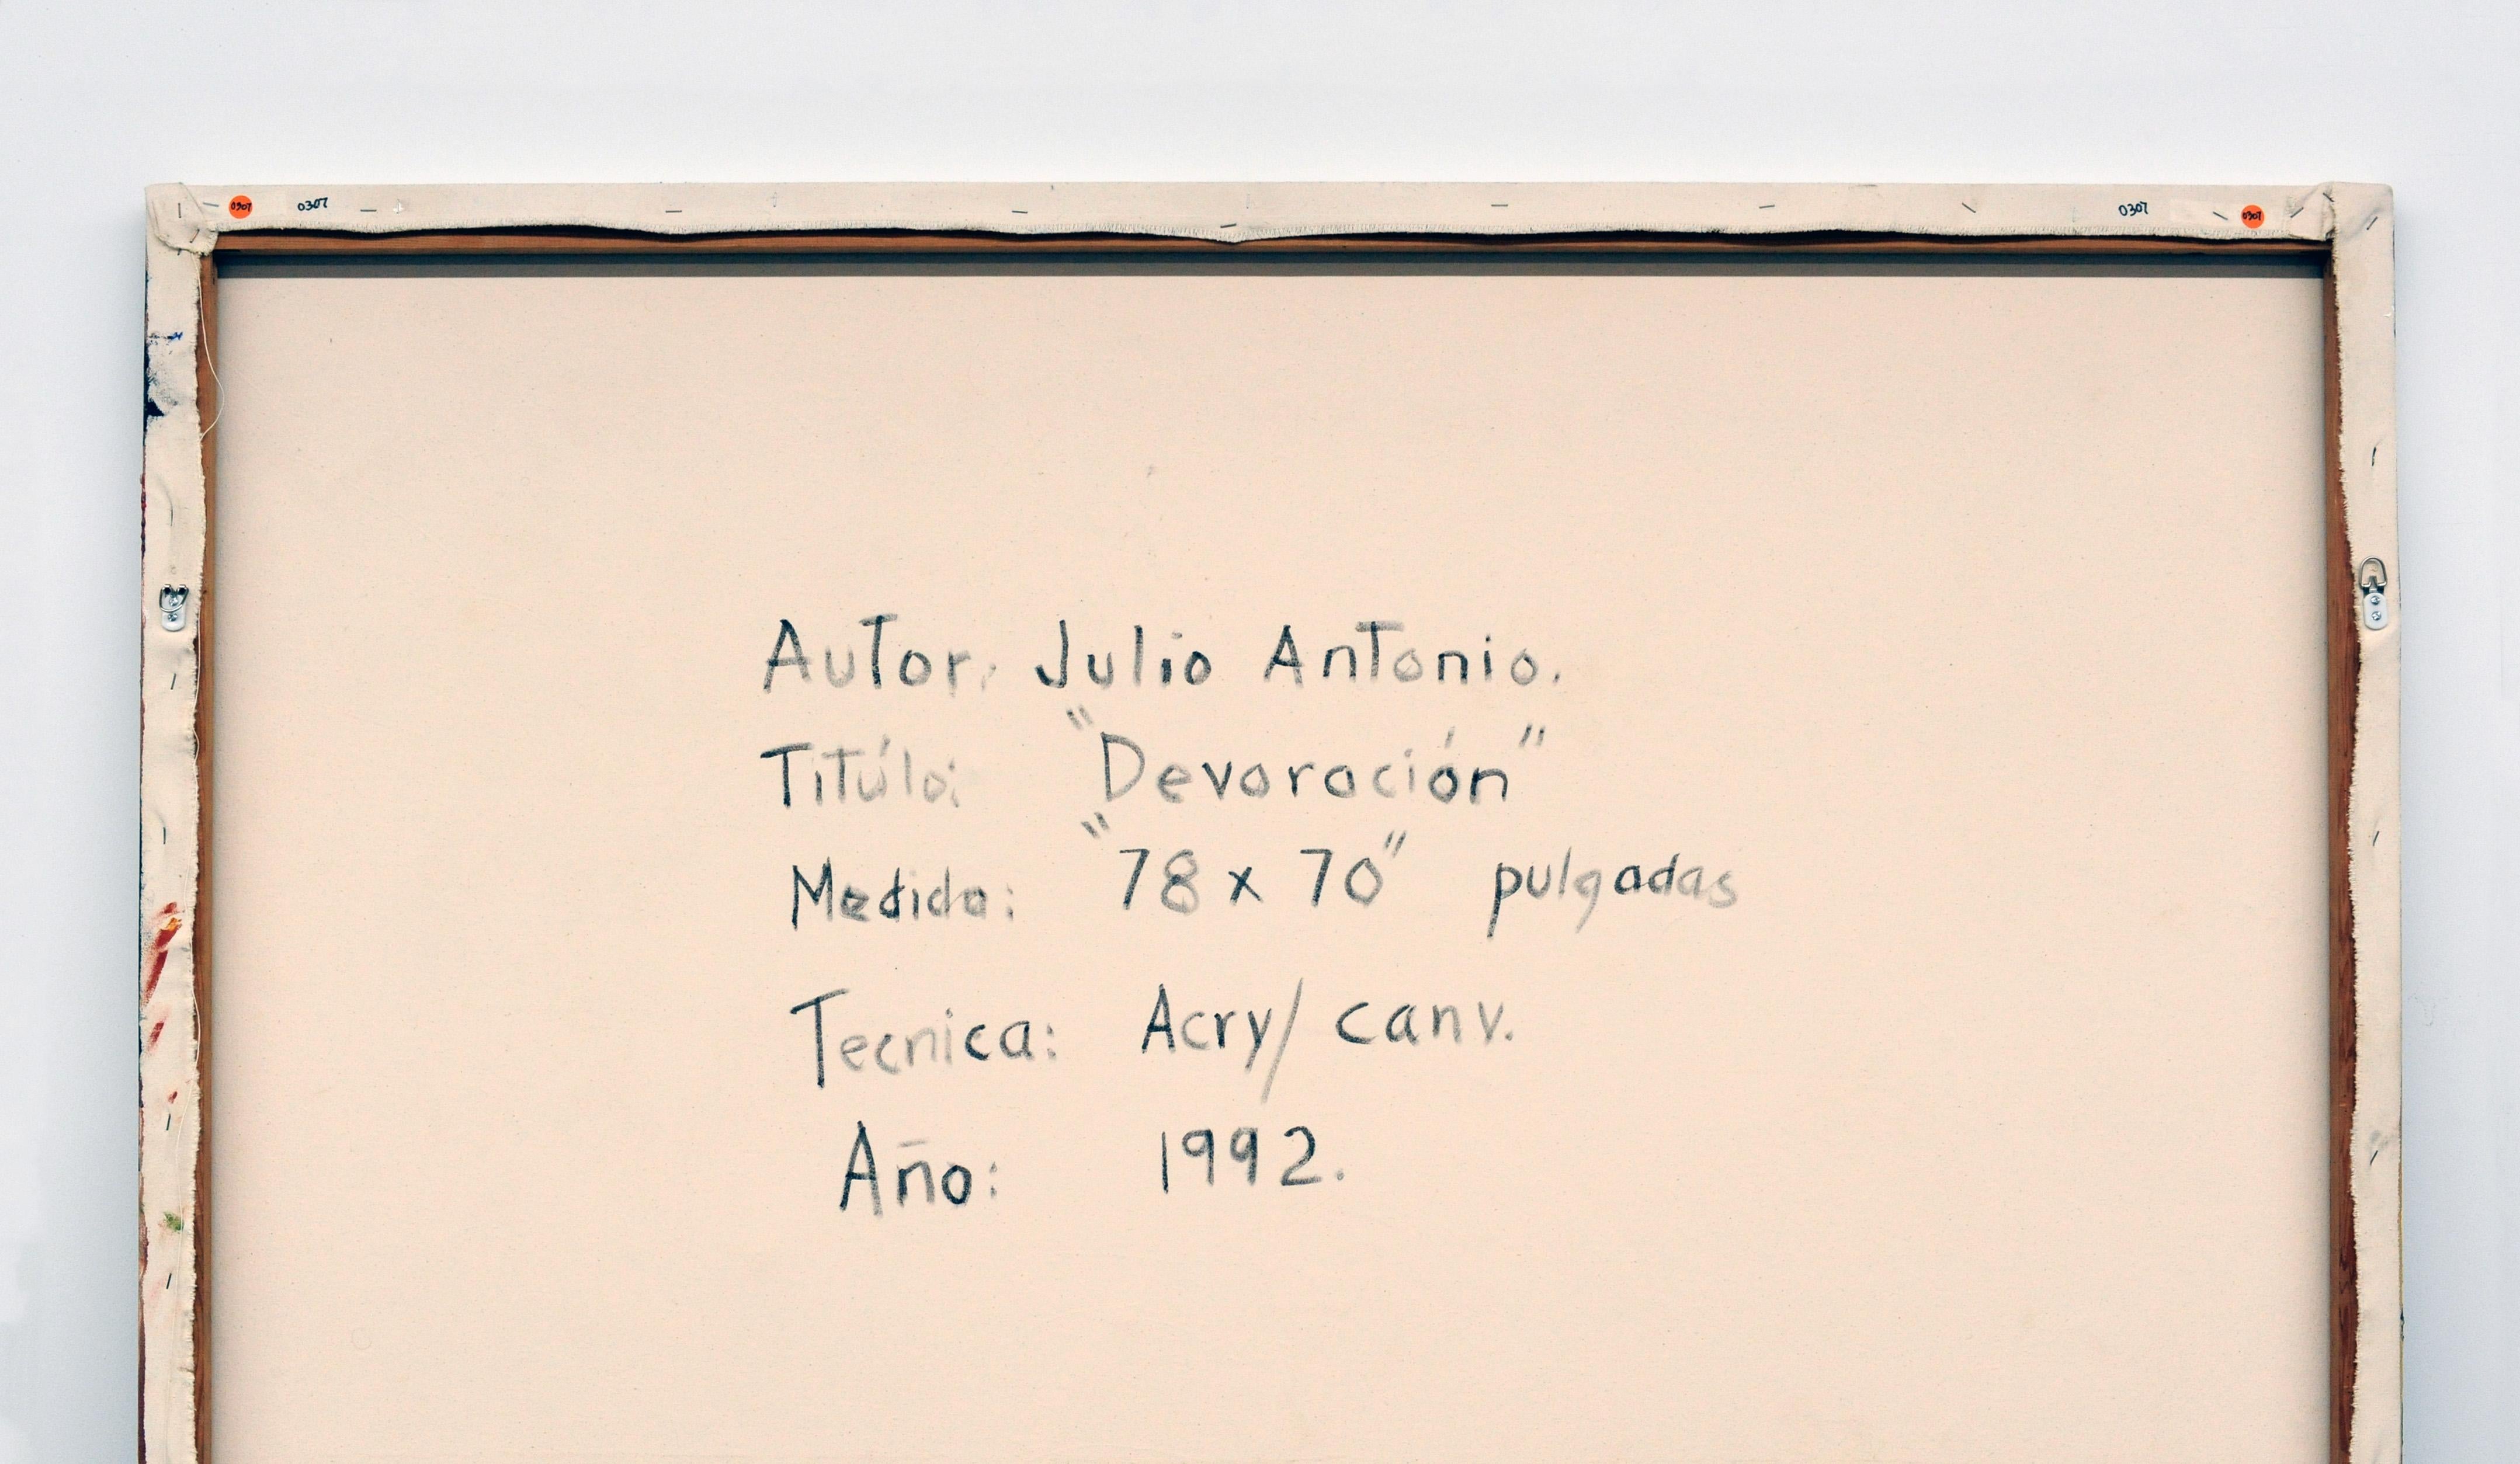 Latin American Cuban Painting by Julio Antonio Devoroción  (Devotion), 1992 For Sale 4